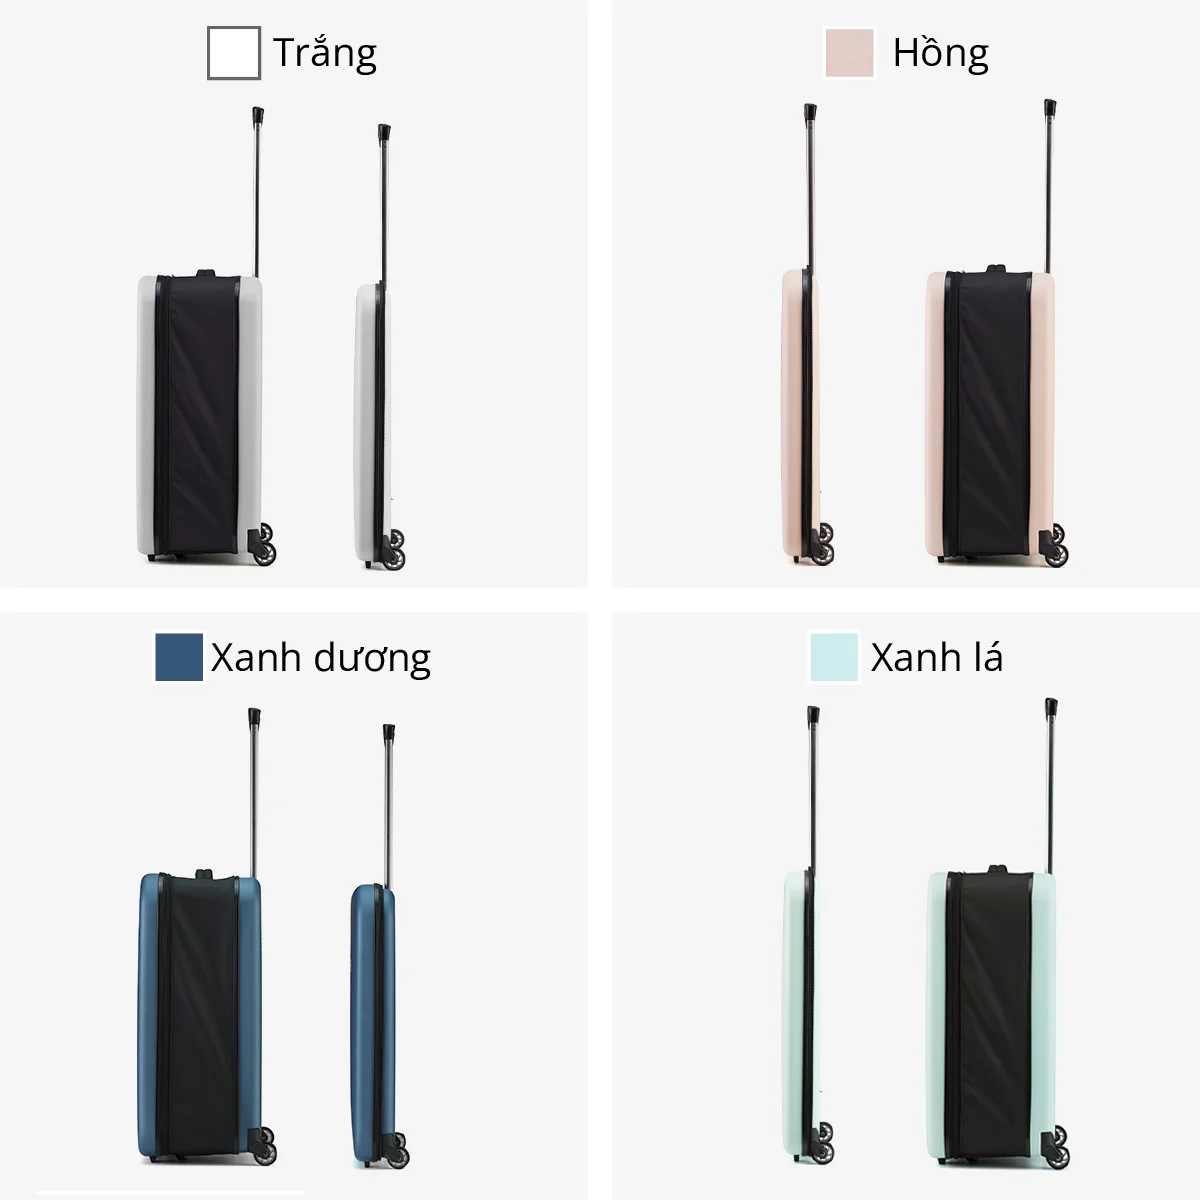 Vali du lịch xếp gọn tiết kiệm không gian Kachi MK355 size 20" / 24" với 4 màu - Hàng chính hãng